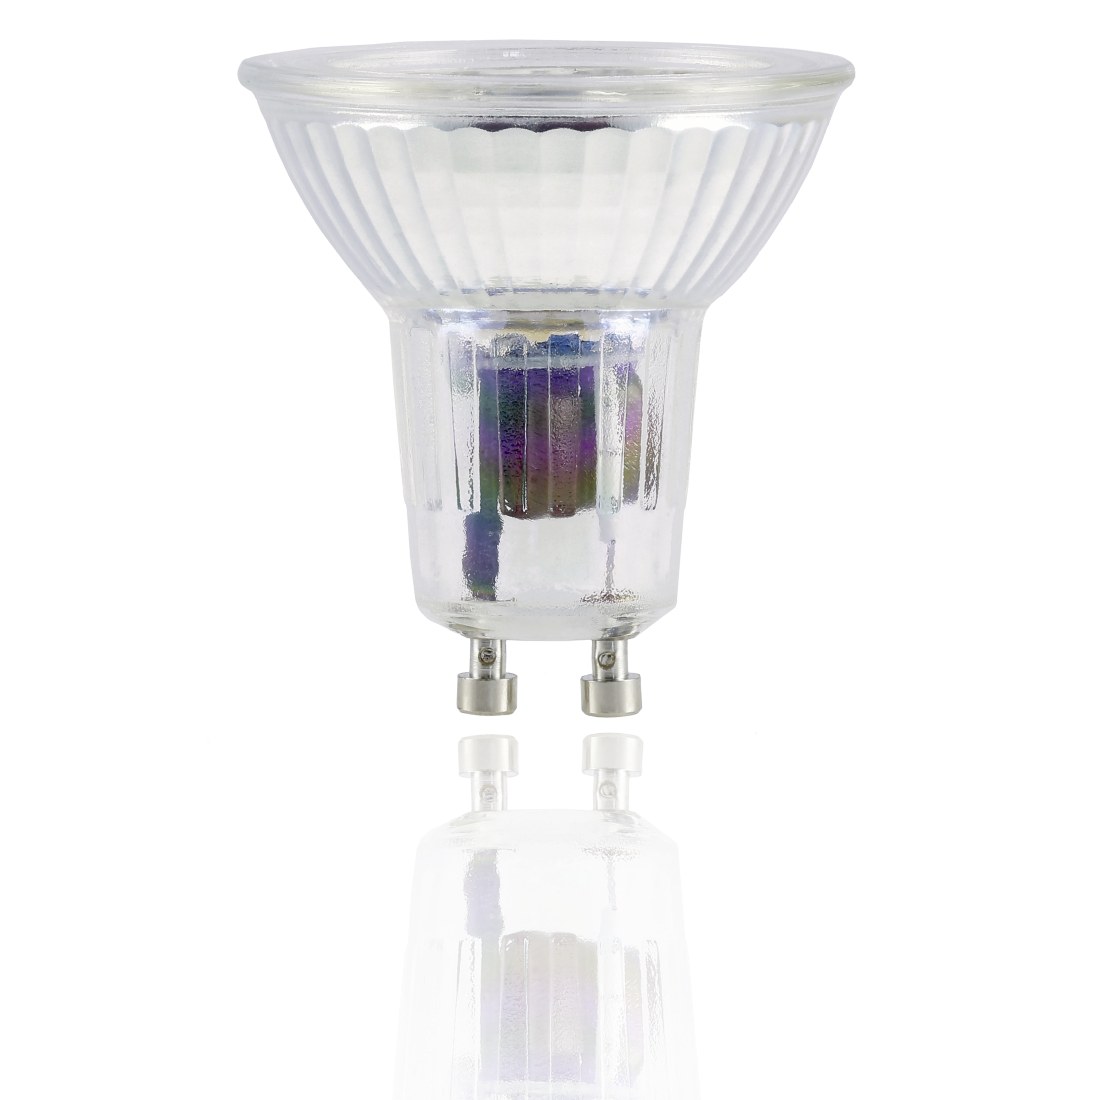 abx2 High-Res Image 2 - Xavax, Ampoule LED, GU10, 400lm remp. 50W, amp. réfl. PAR16, bl. chd., verre